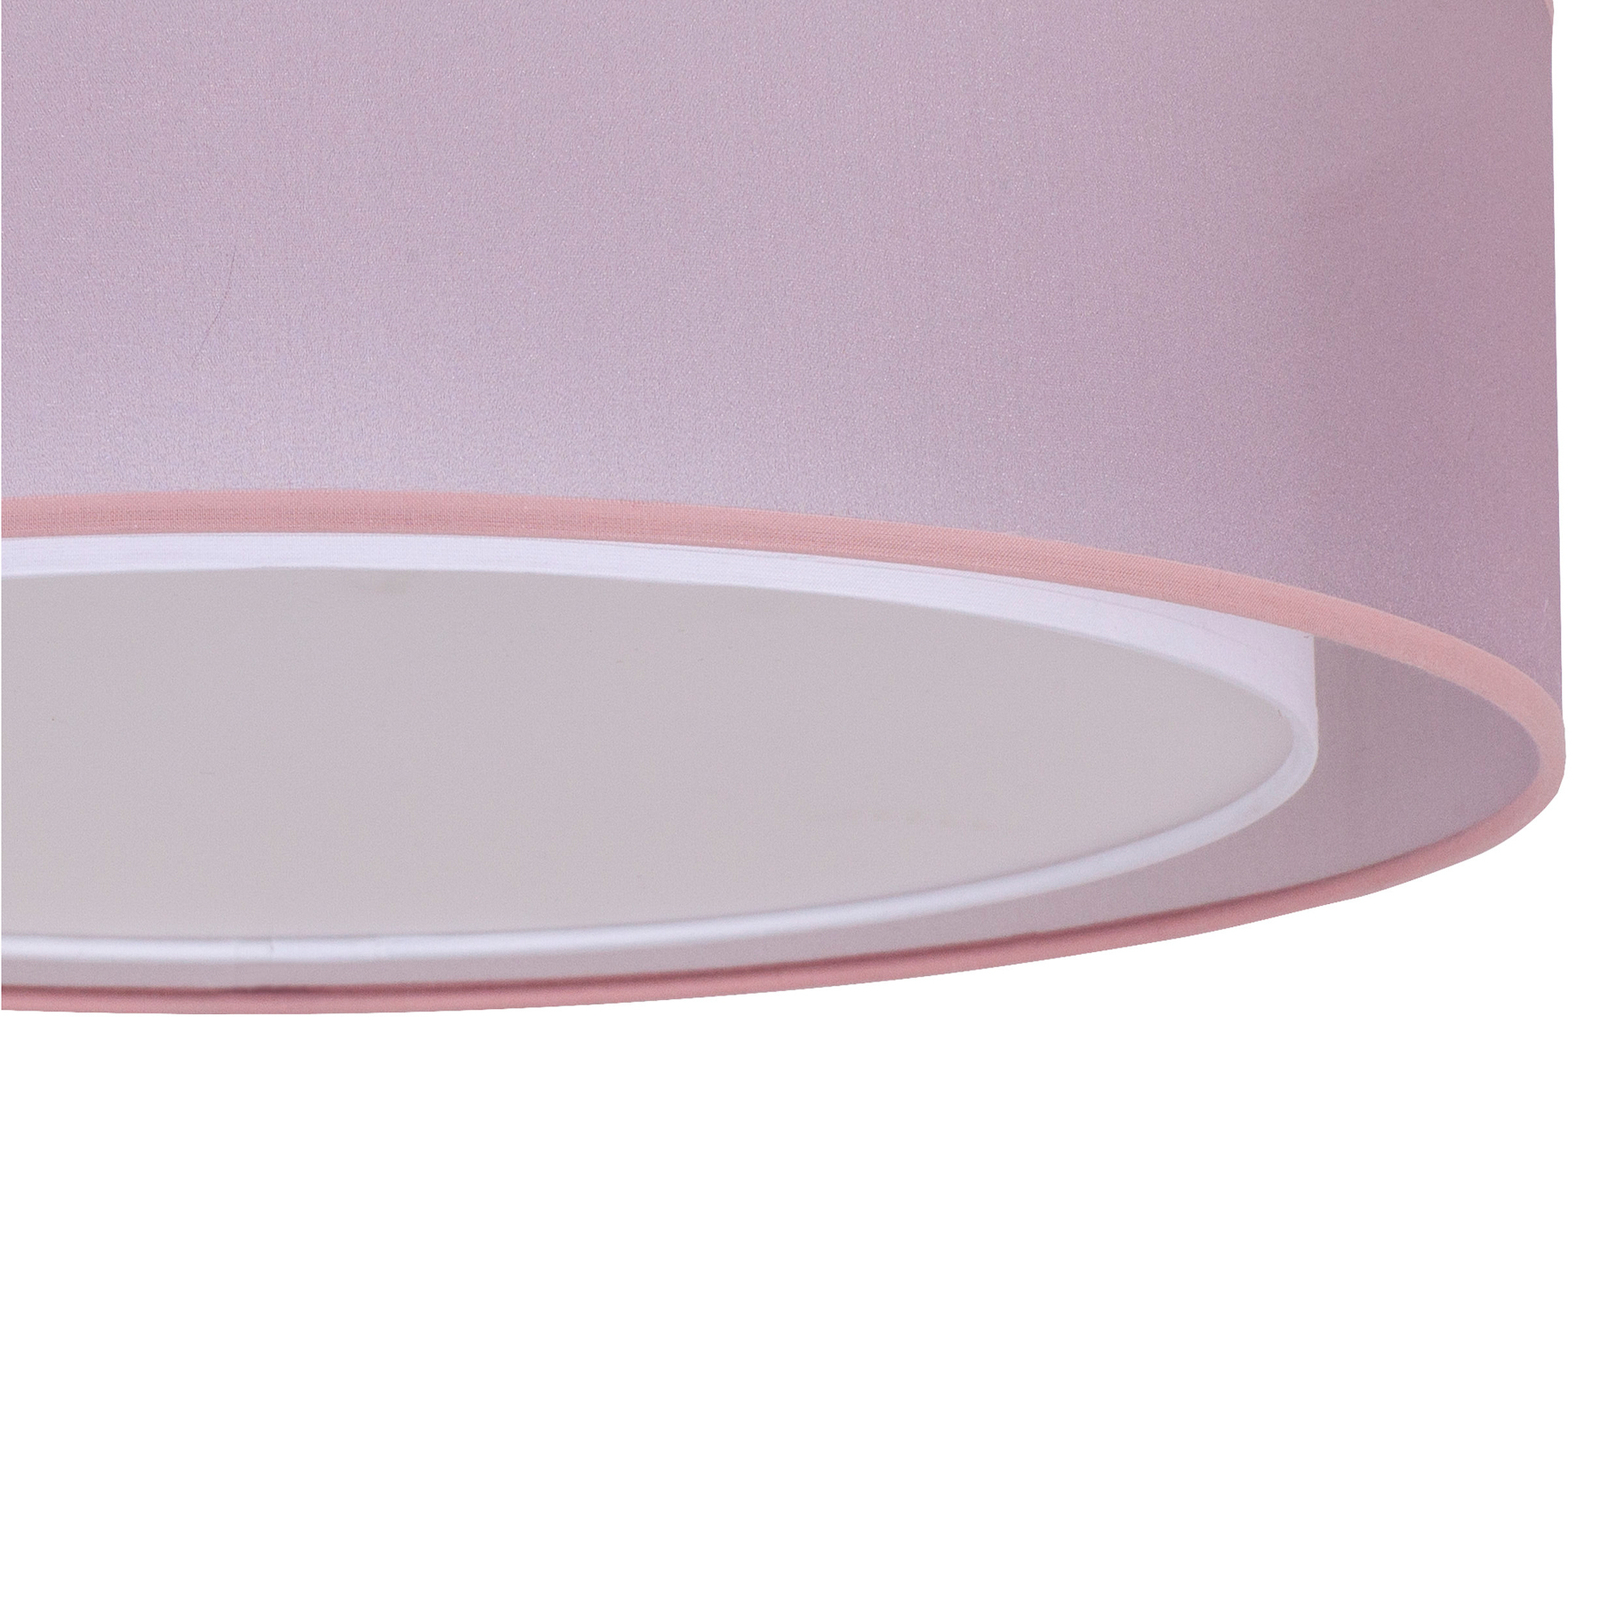 Euluna Tibu ceiling light, textile, Ø 50 cm, pink